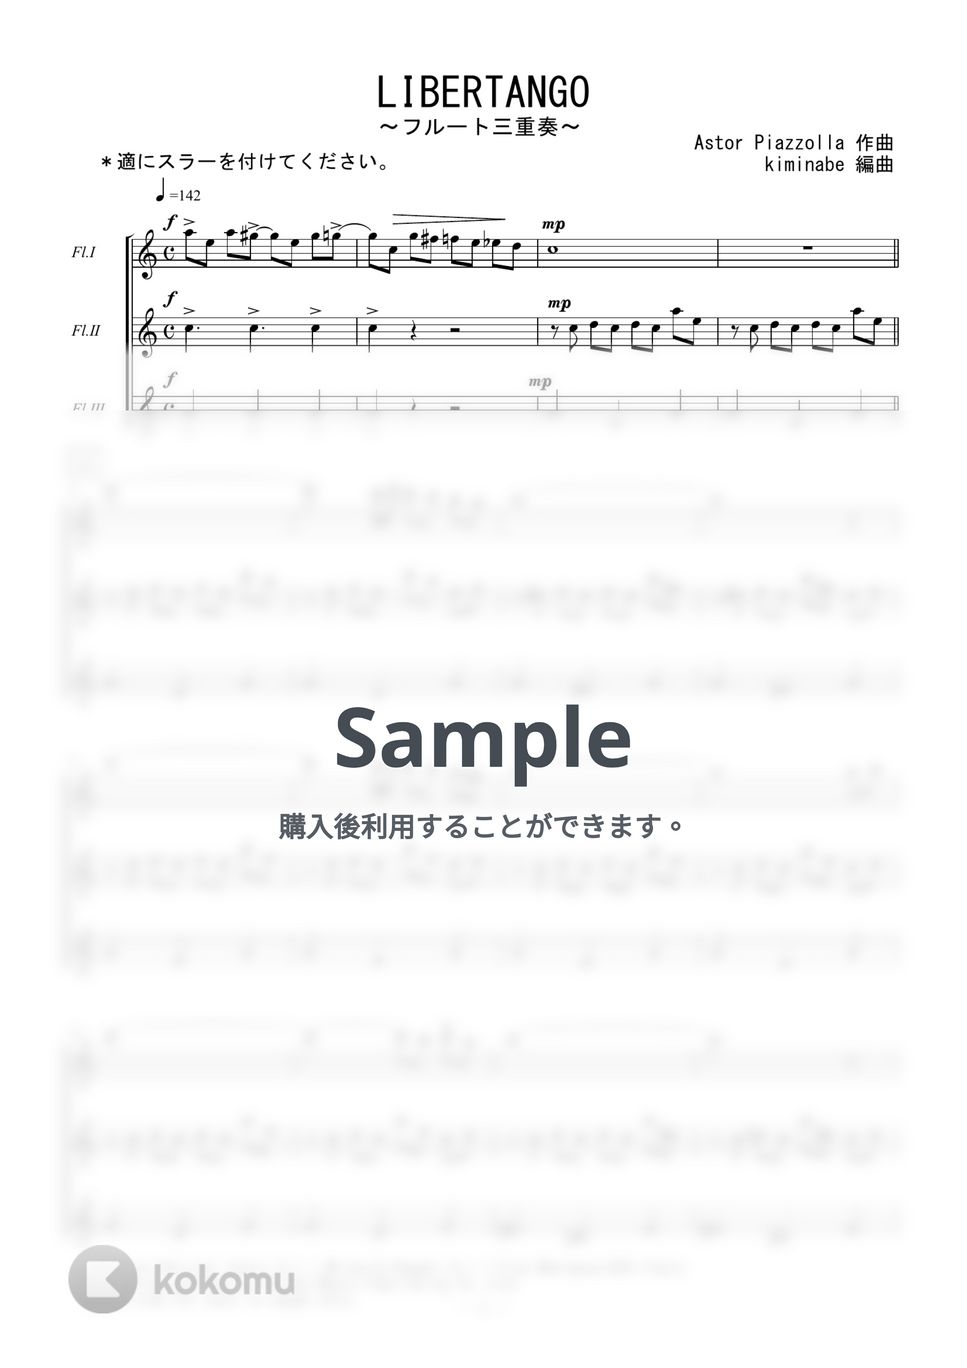 ピアソラ - LIBERTANGO (フルート三重奏) by kiminabe